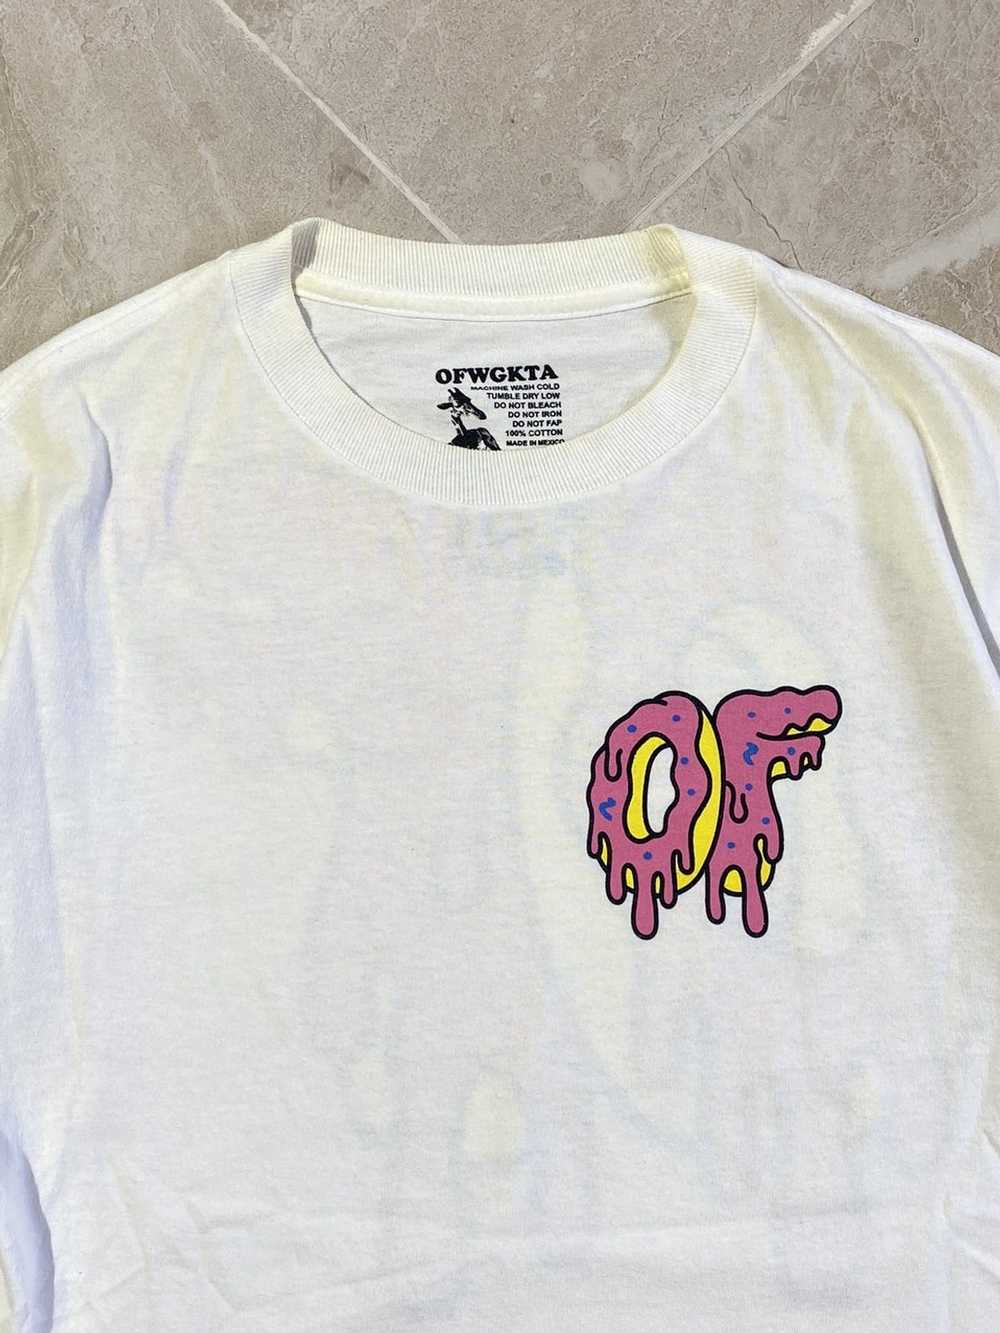 Odd Future × Streetwear OFWGKTA Odd Future t-shirt - image 4